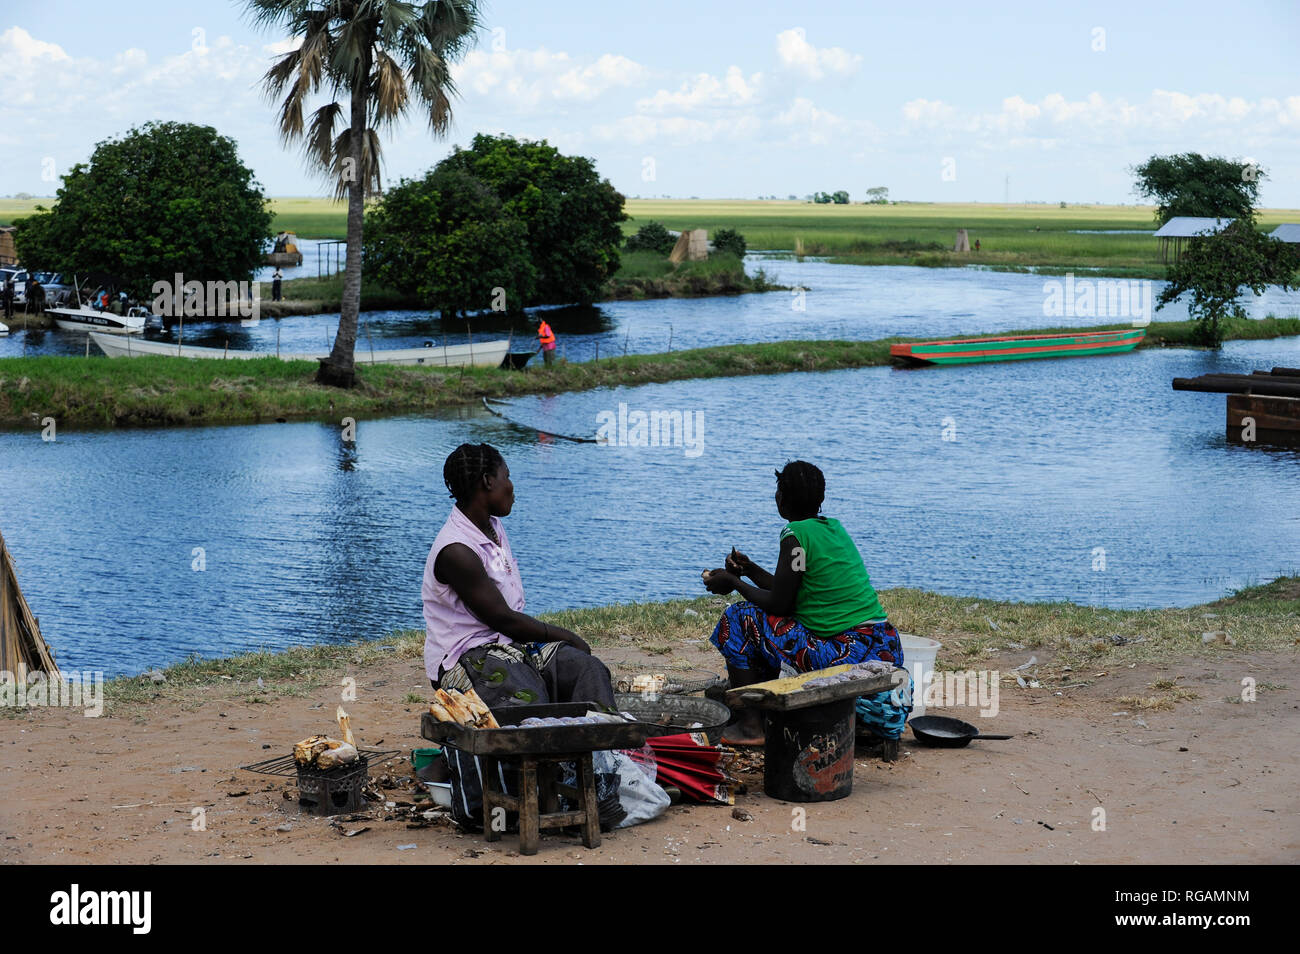 ZAMBIA Barotseland Mongu, Mulamba harbour at river Zambezi flood plain / SAMBIA Barotseland , Stadt Mongu , Hafen Mulamba in der Flutebene des Zambezi Fluss Stock Photo